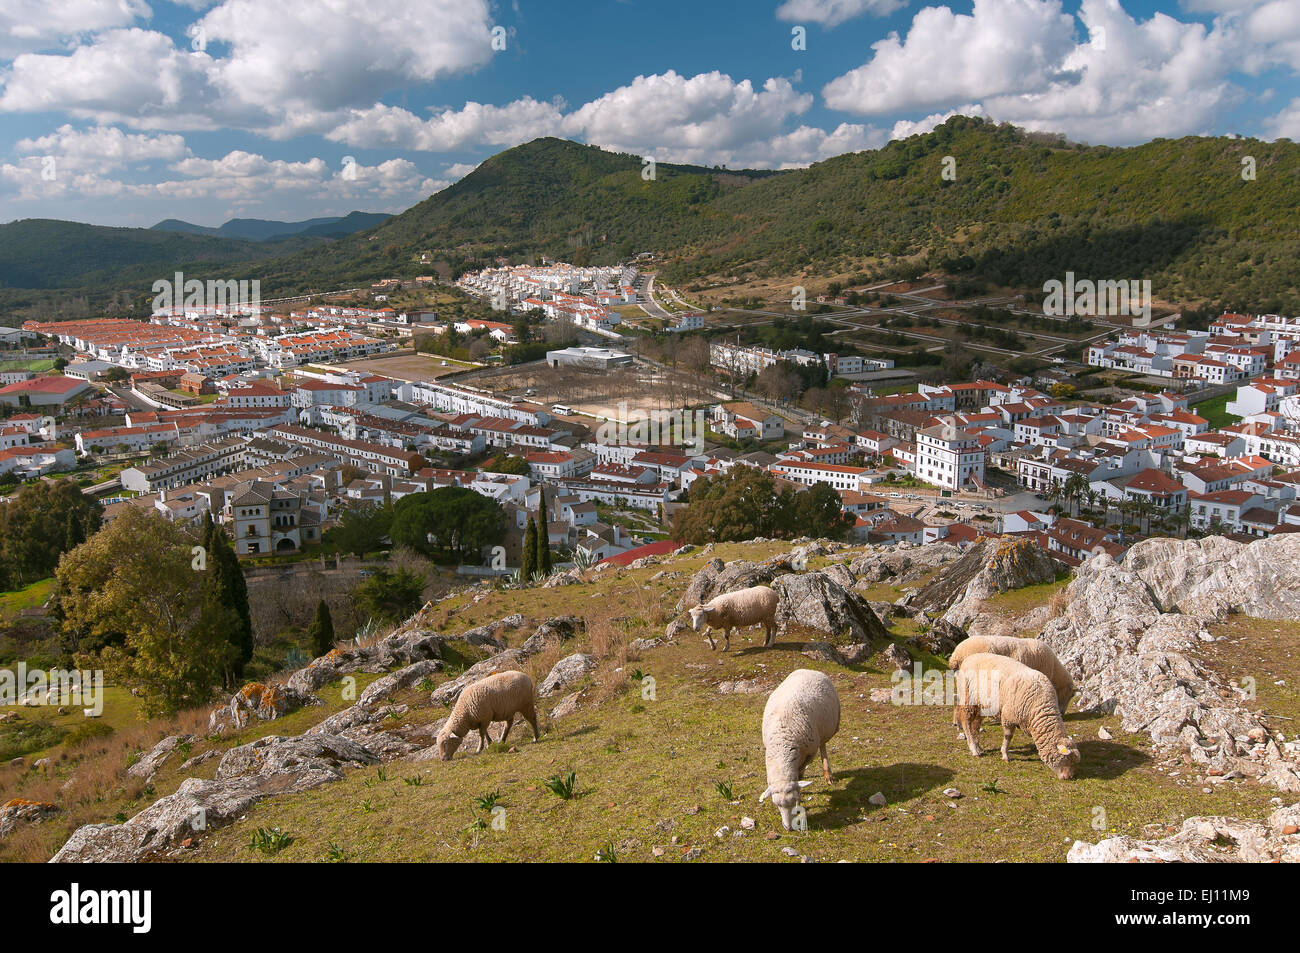 Vue panoramique et des moutons, Aracena, Huelva province, région d'Andalousie, Espagne, Europe Banque D'Images